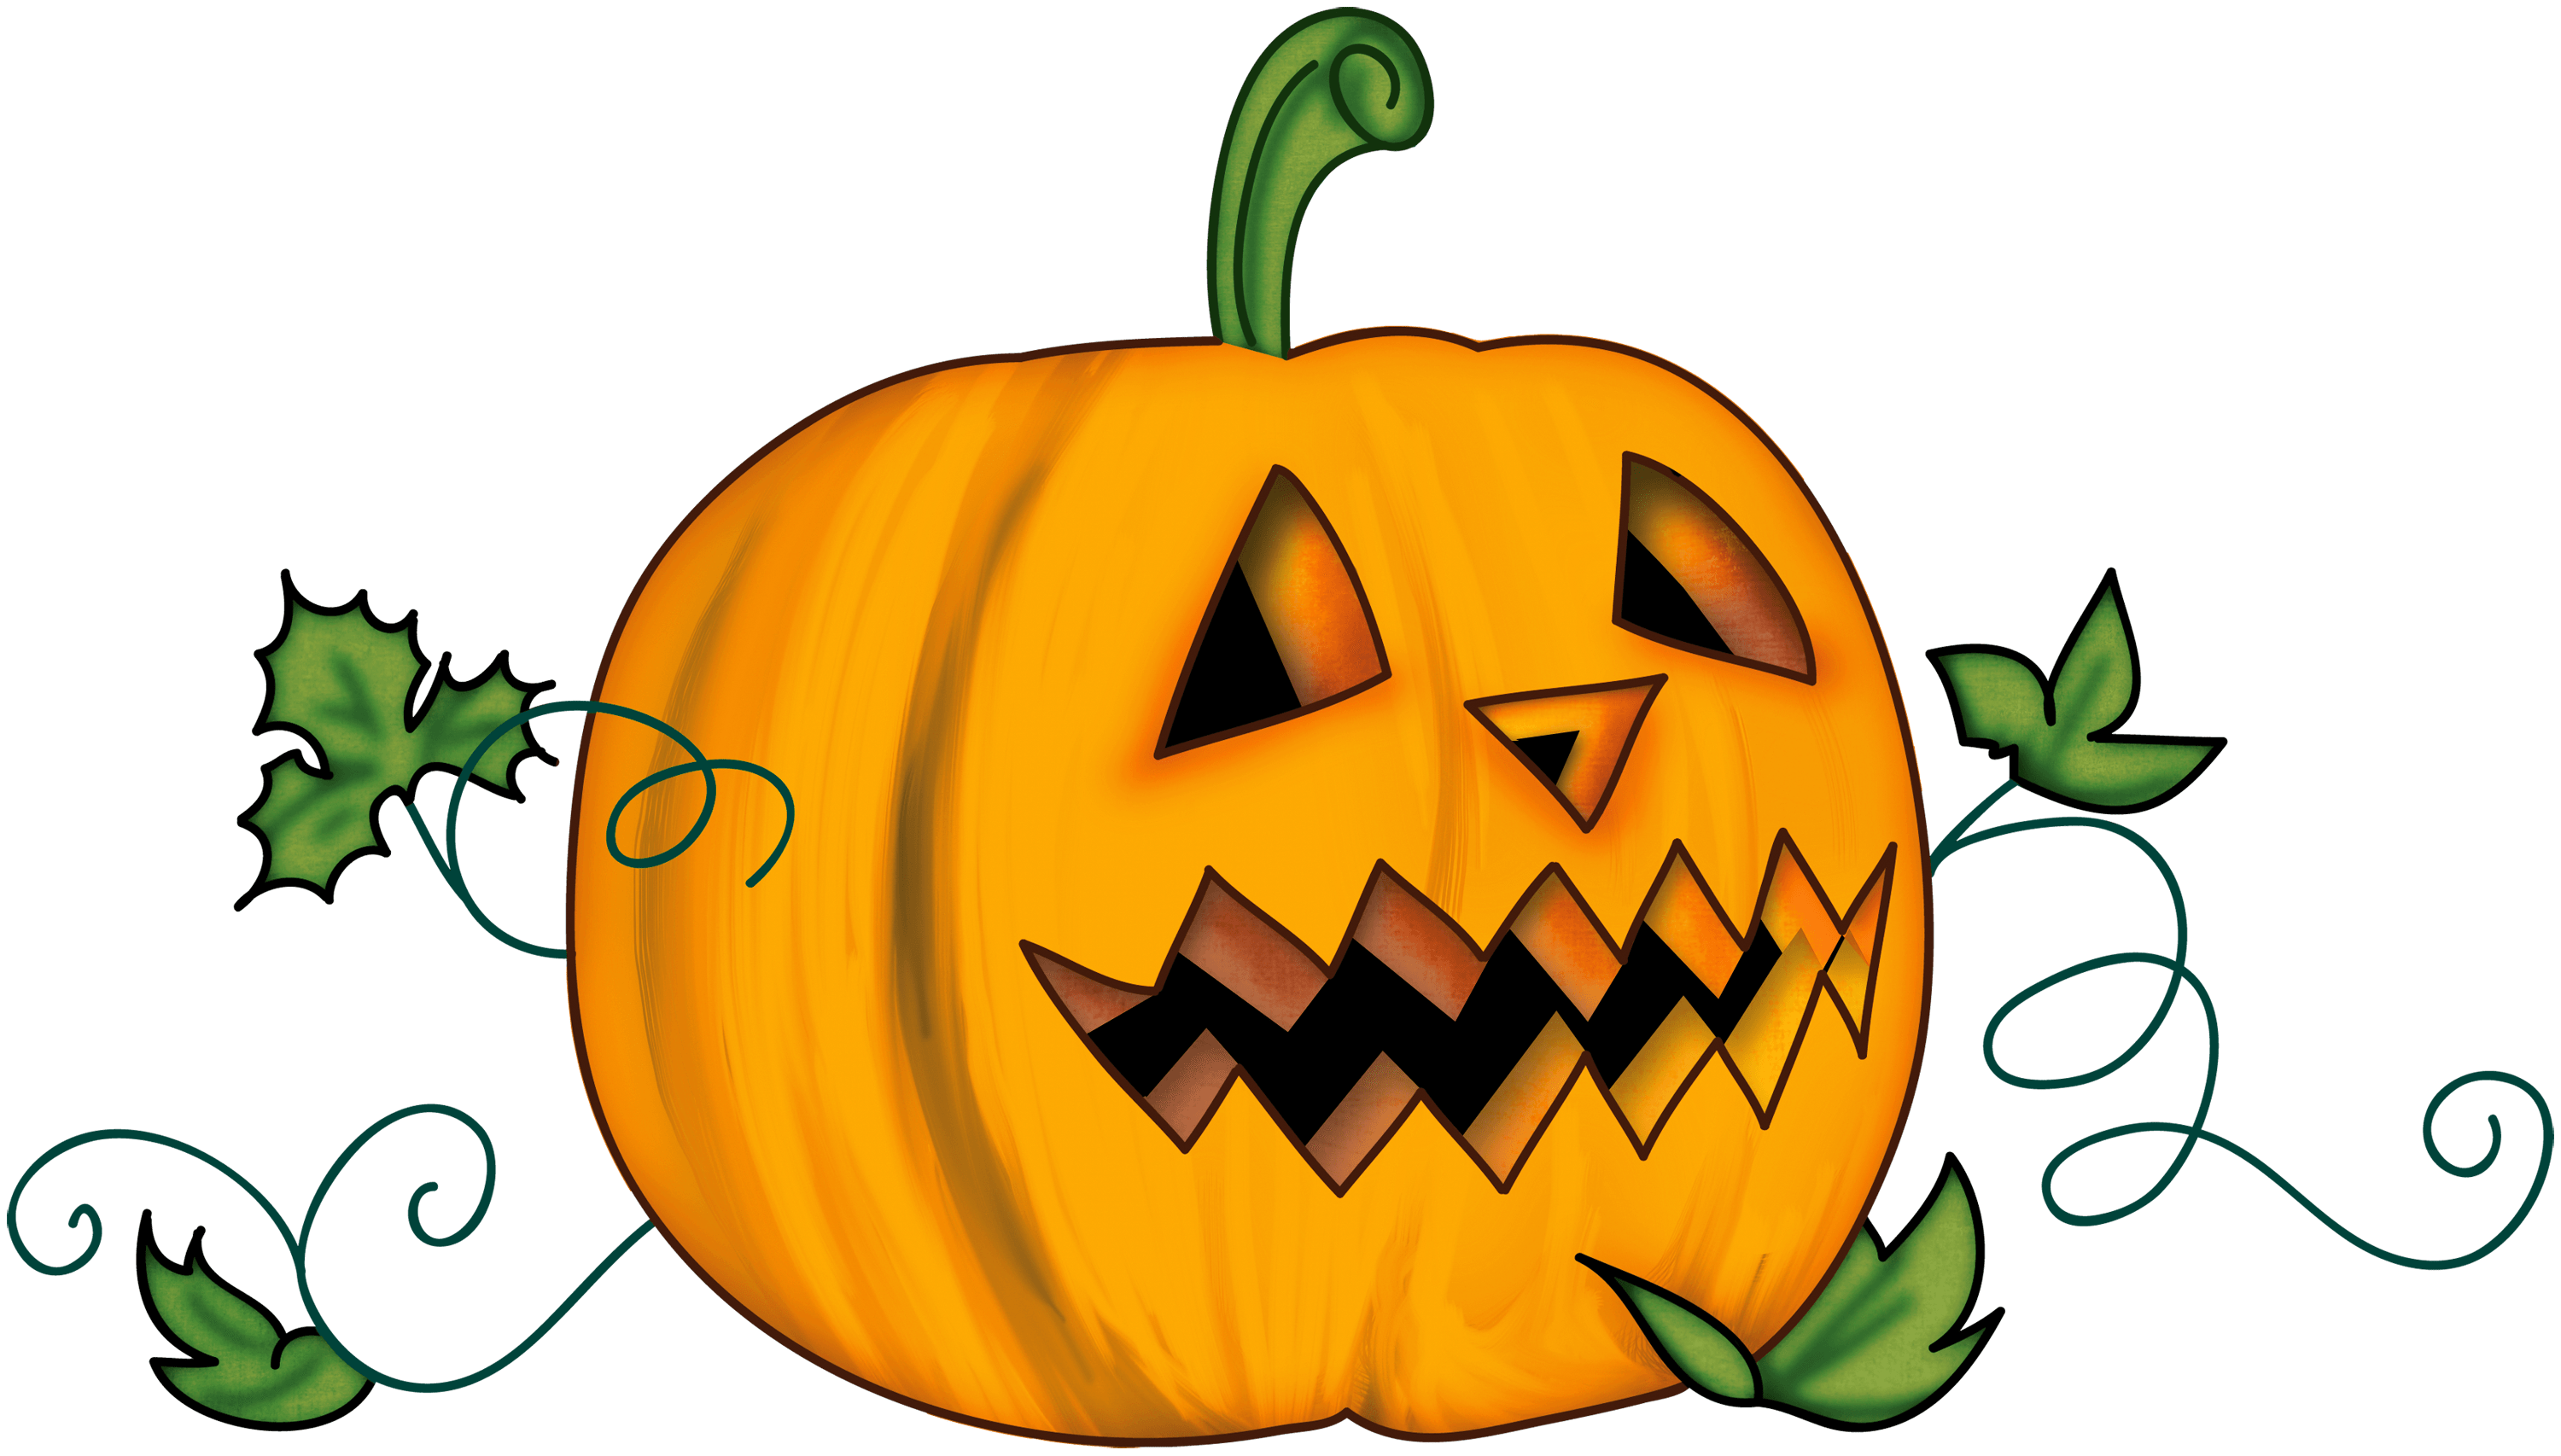 Another Pumpkin Halloween Clip arts